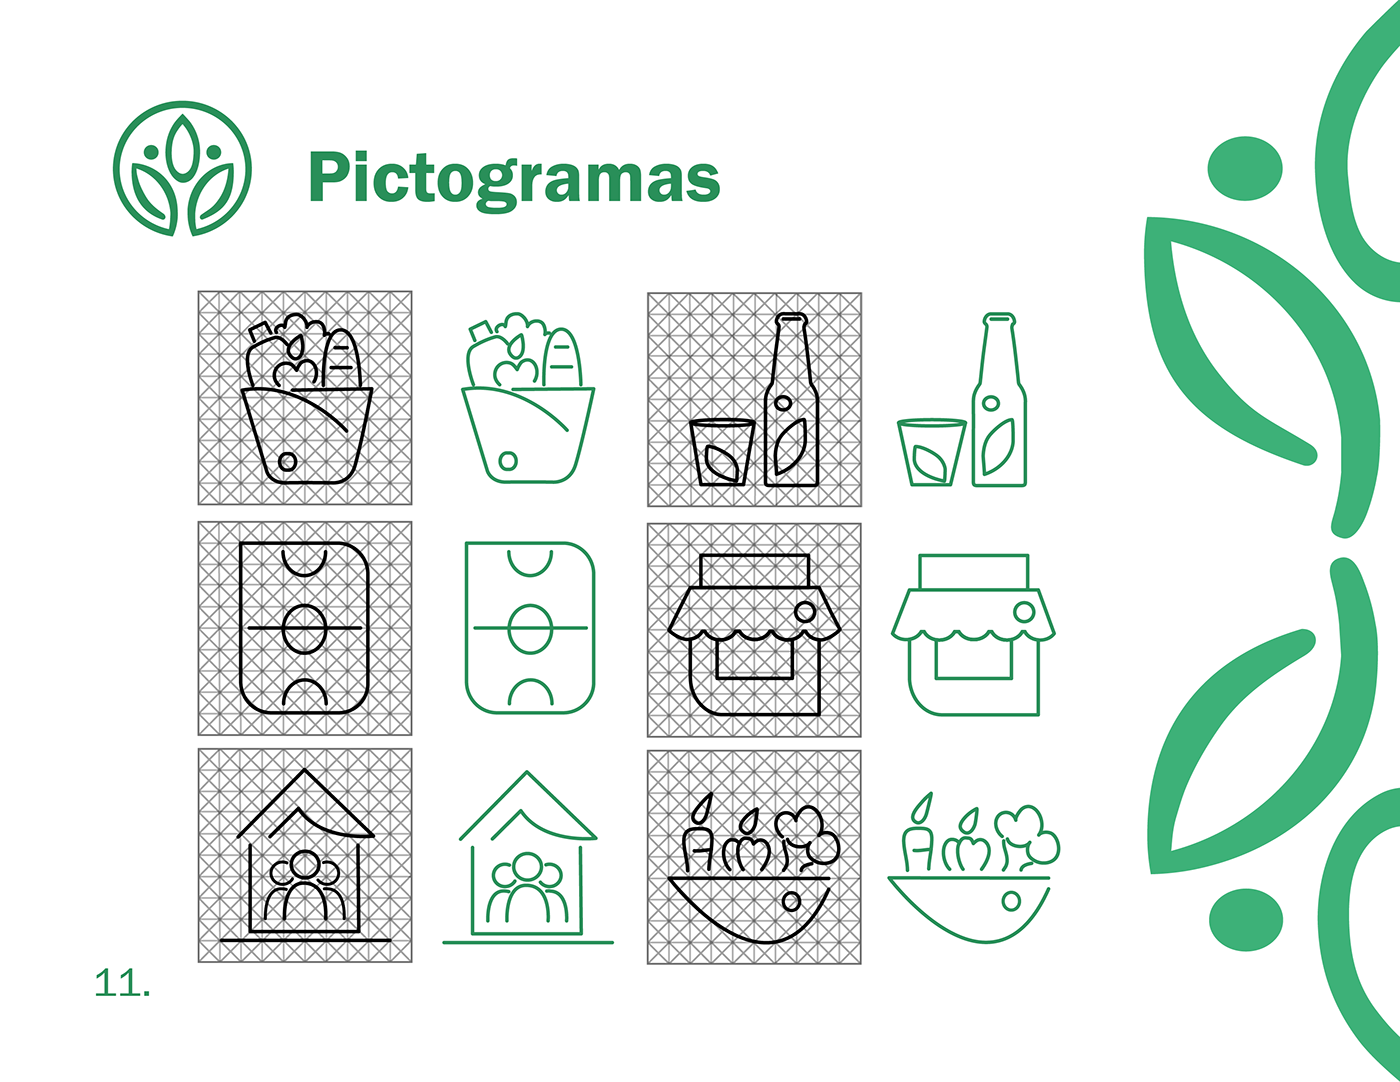 señaletica señalización Iconos pictogramas diseño gráfico logo identity visual